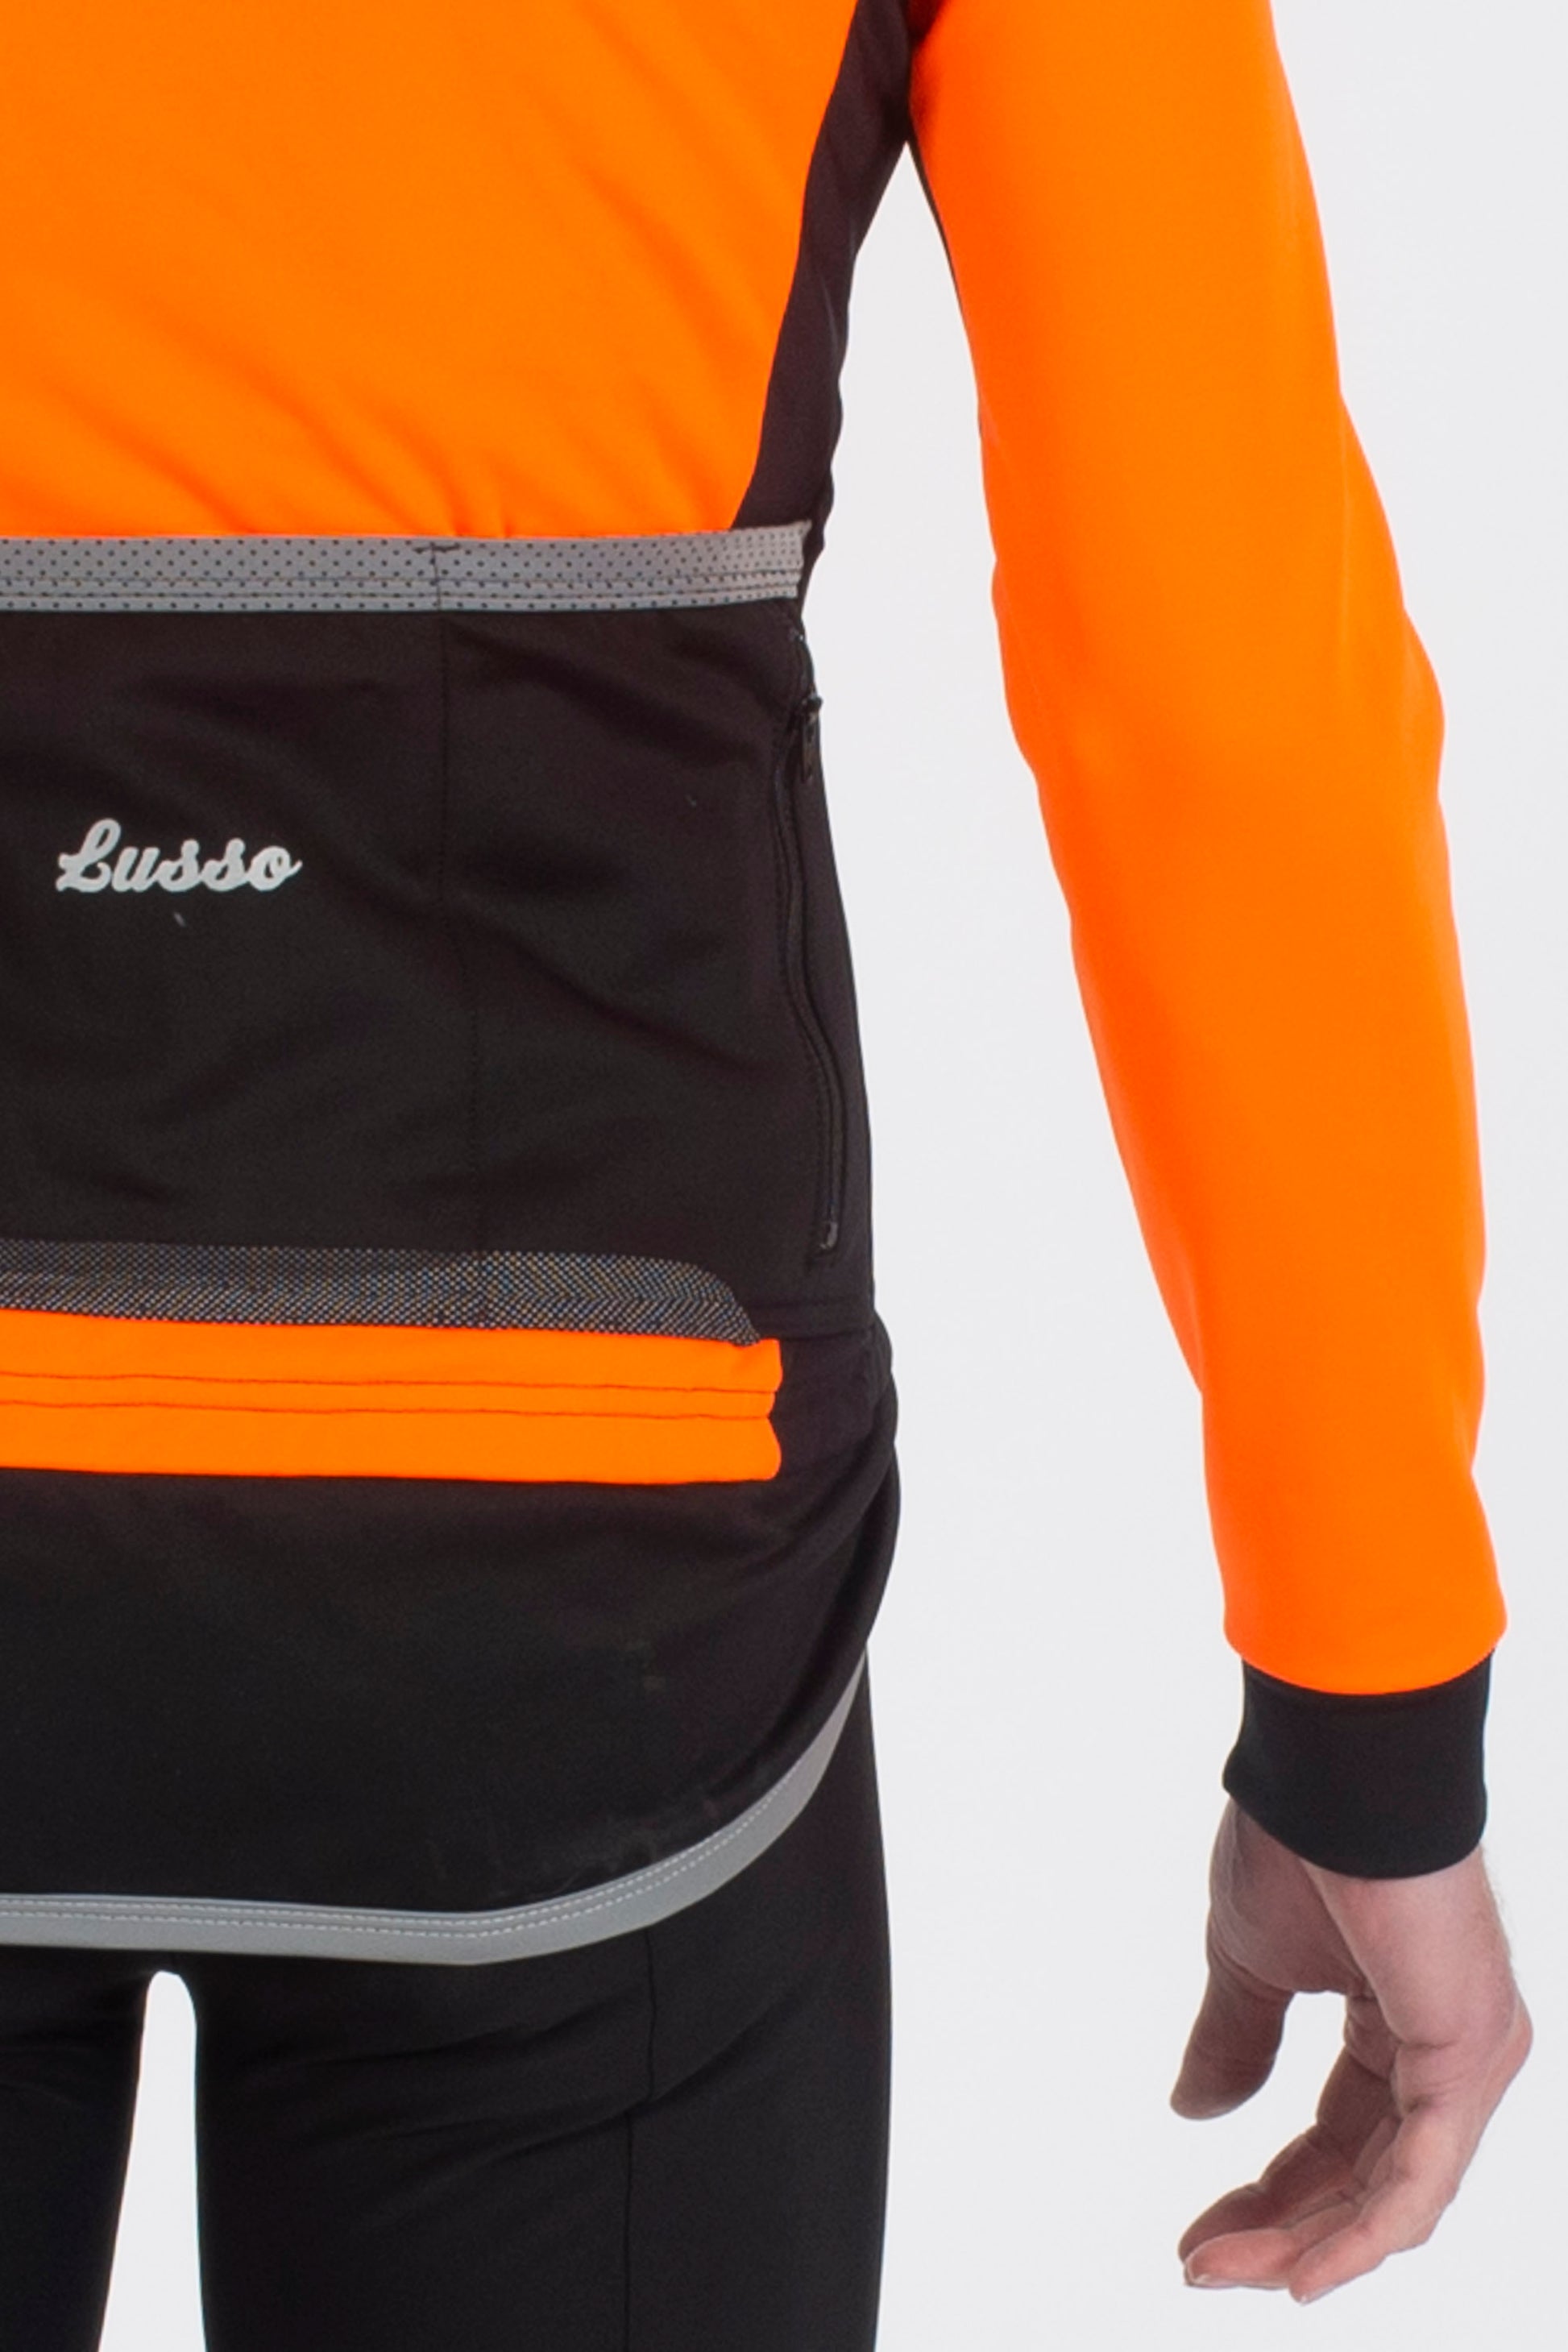 Aqua Extreme V2 Jacket - Orange - Lusso Cycle Wear